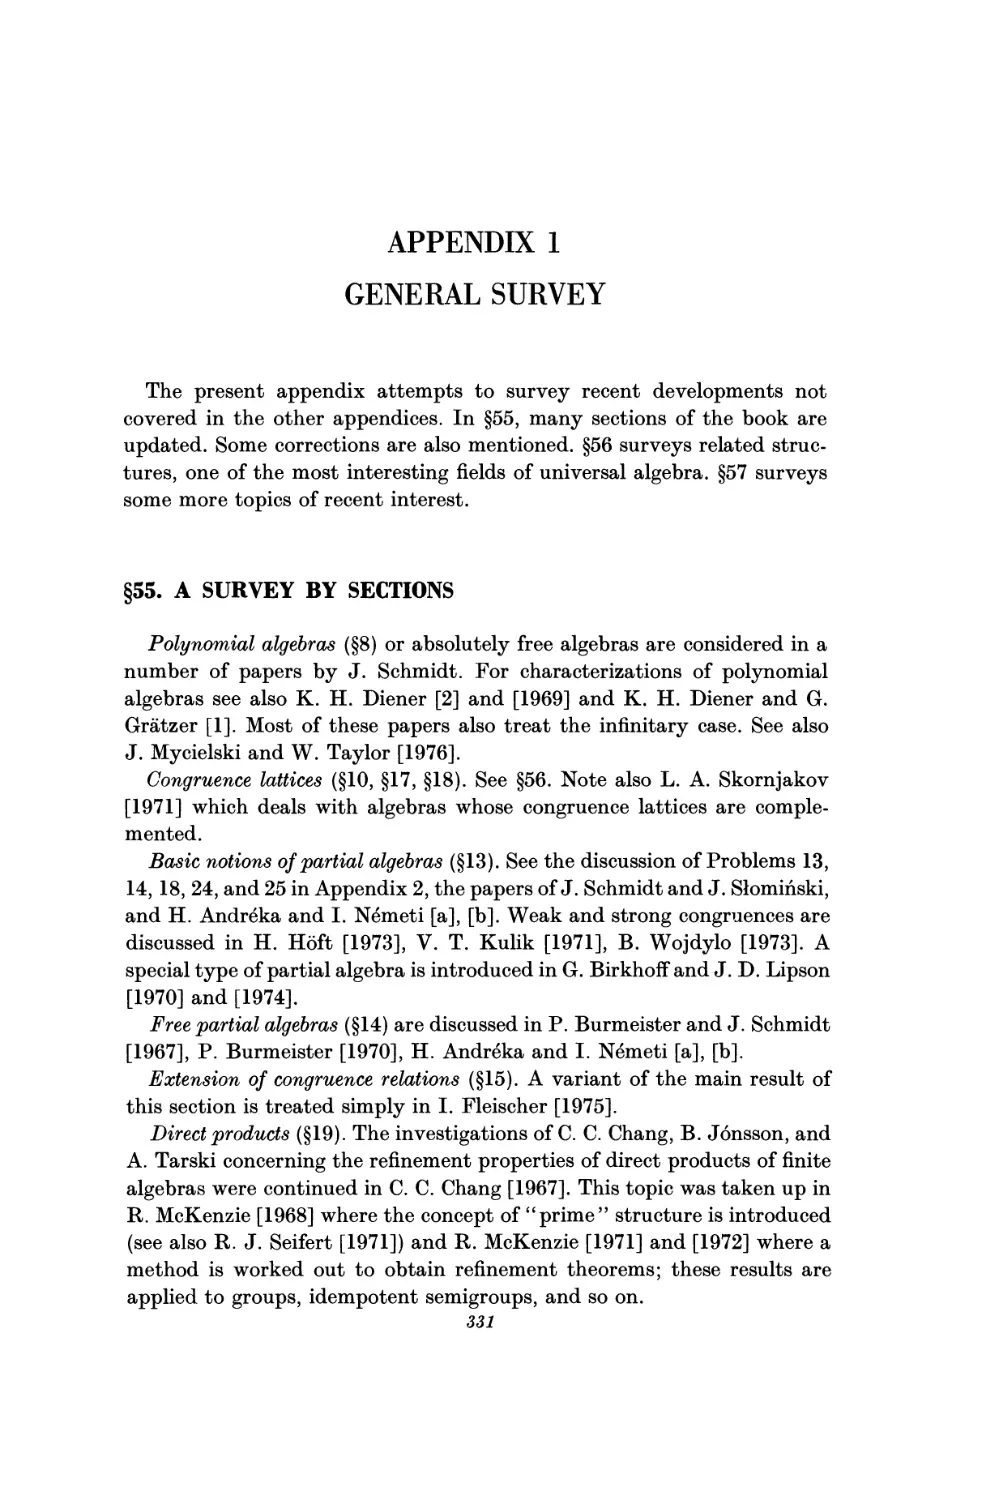 Appendix 1. General Survey